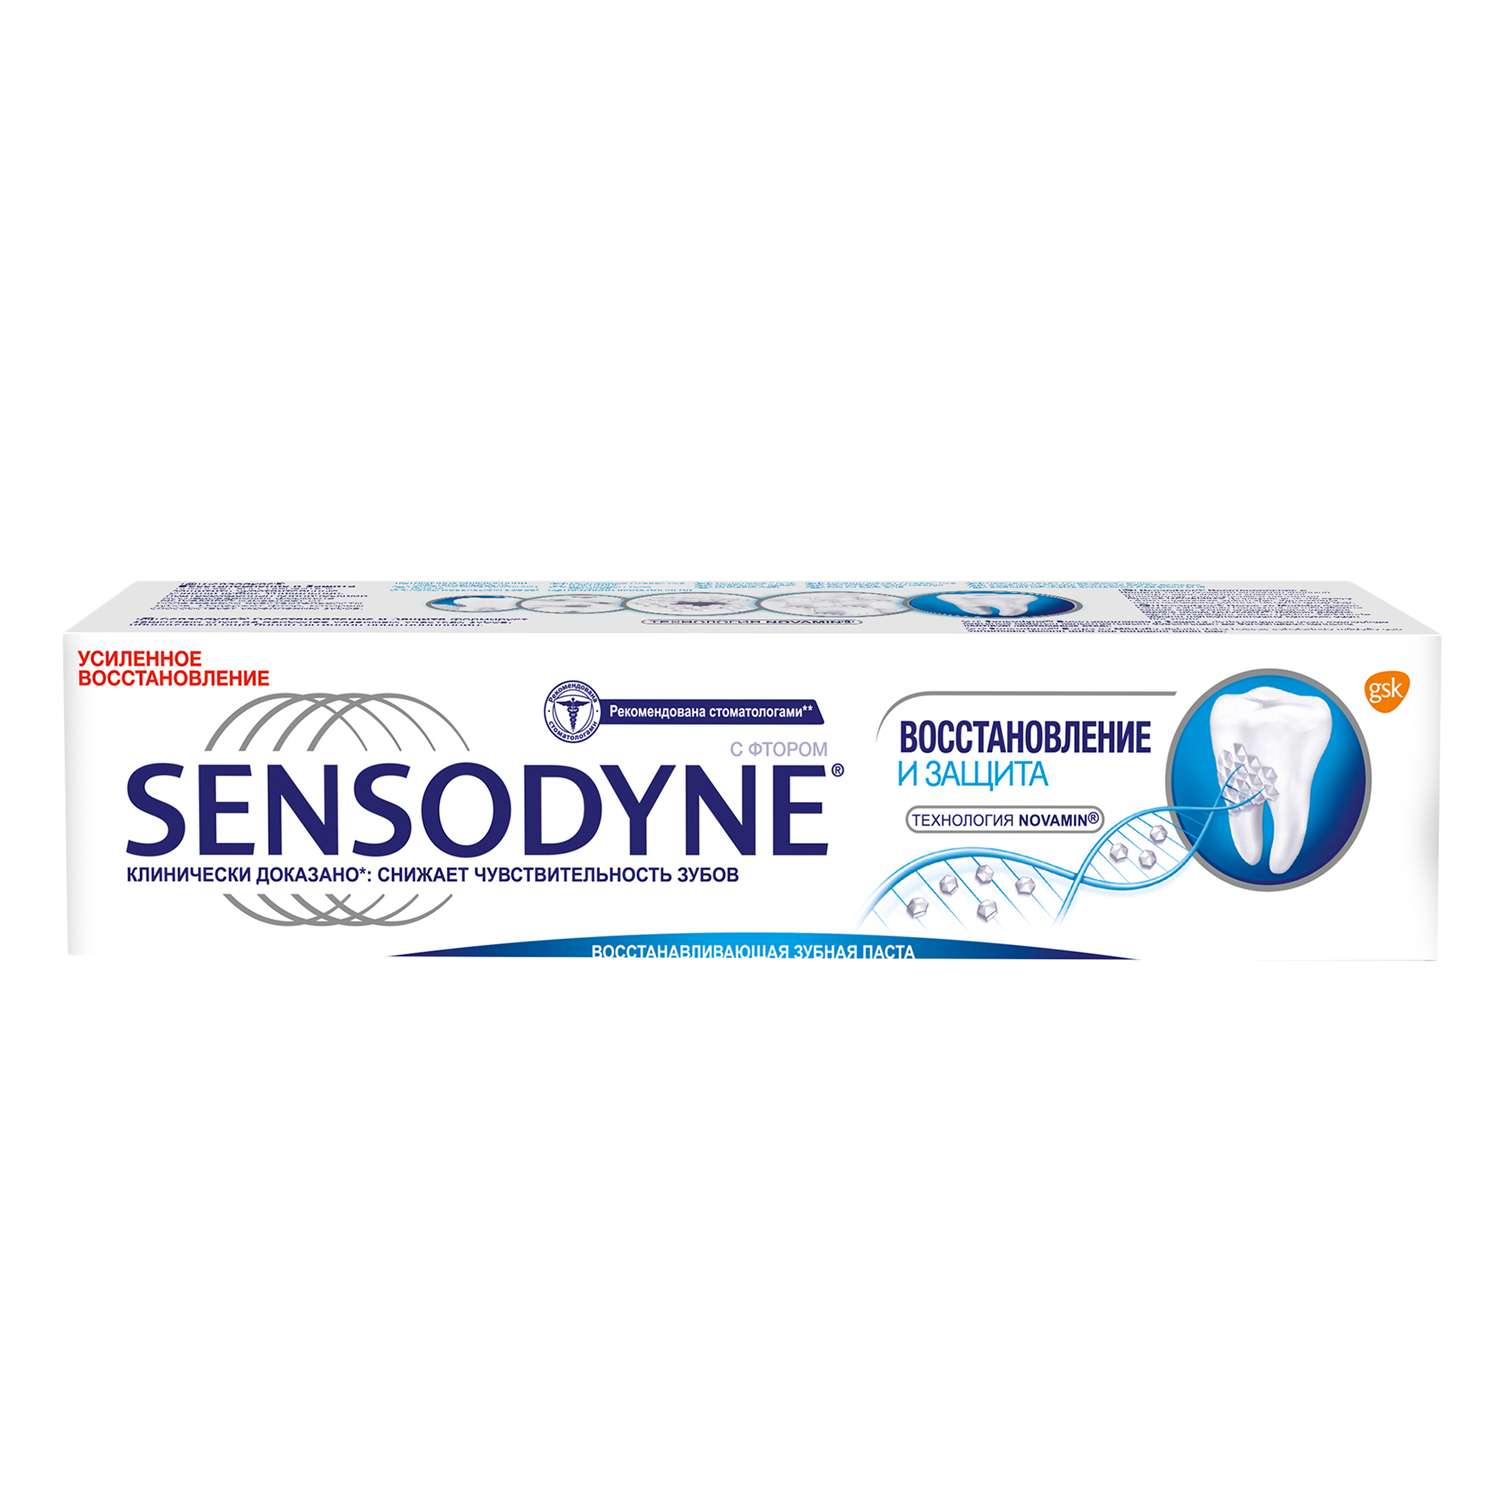 Зубная паста Sensodyne Восстановление и Защита 75 мл - фото 4